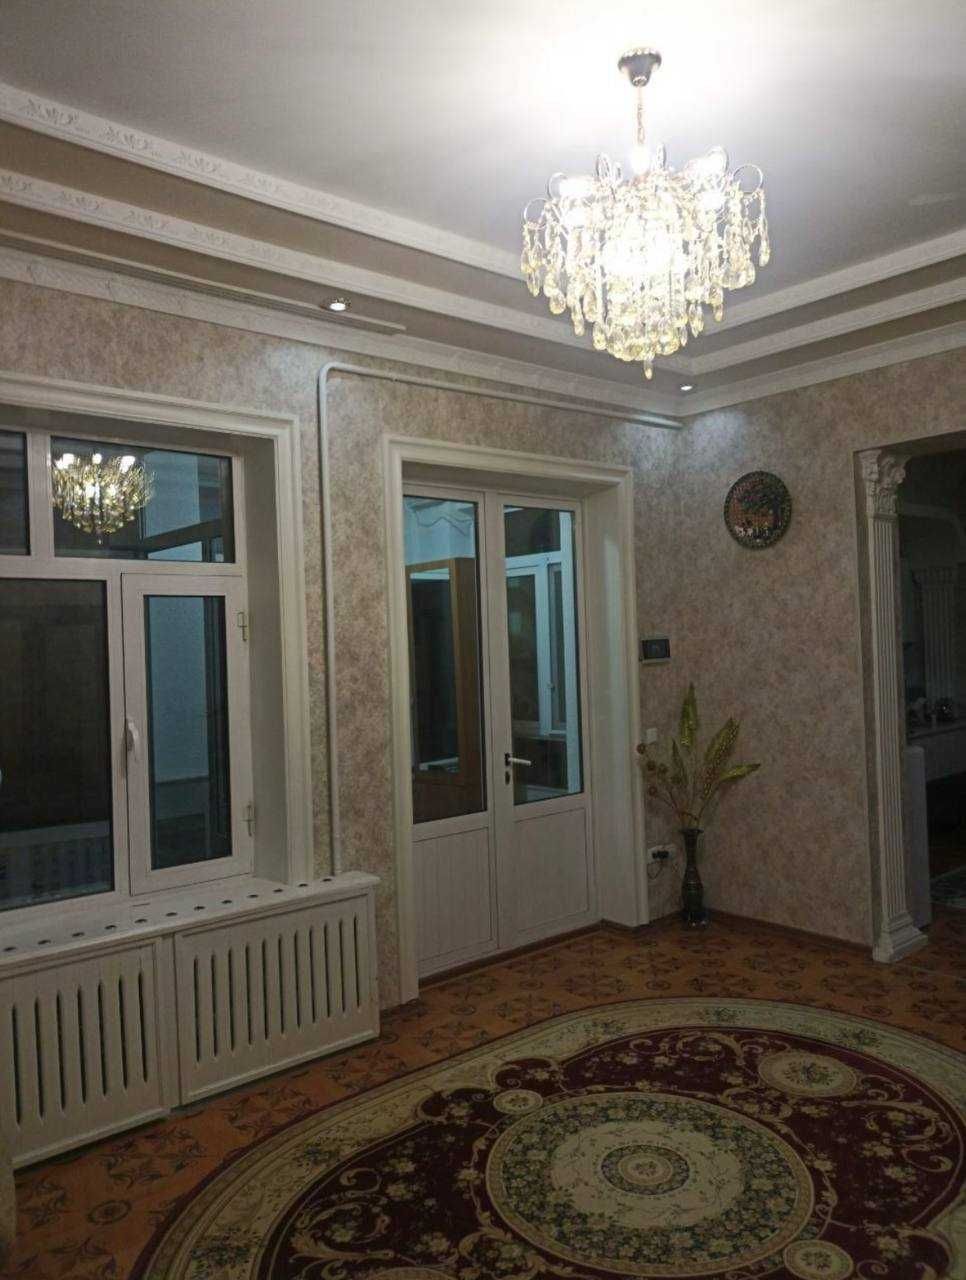 Продается дом в Мирзо Улугбекском районе "Центр Луначарский"